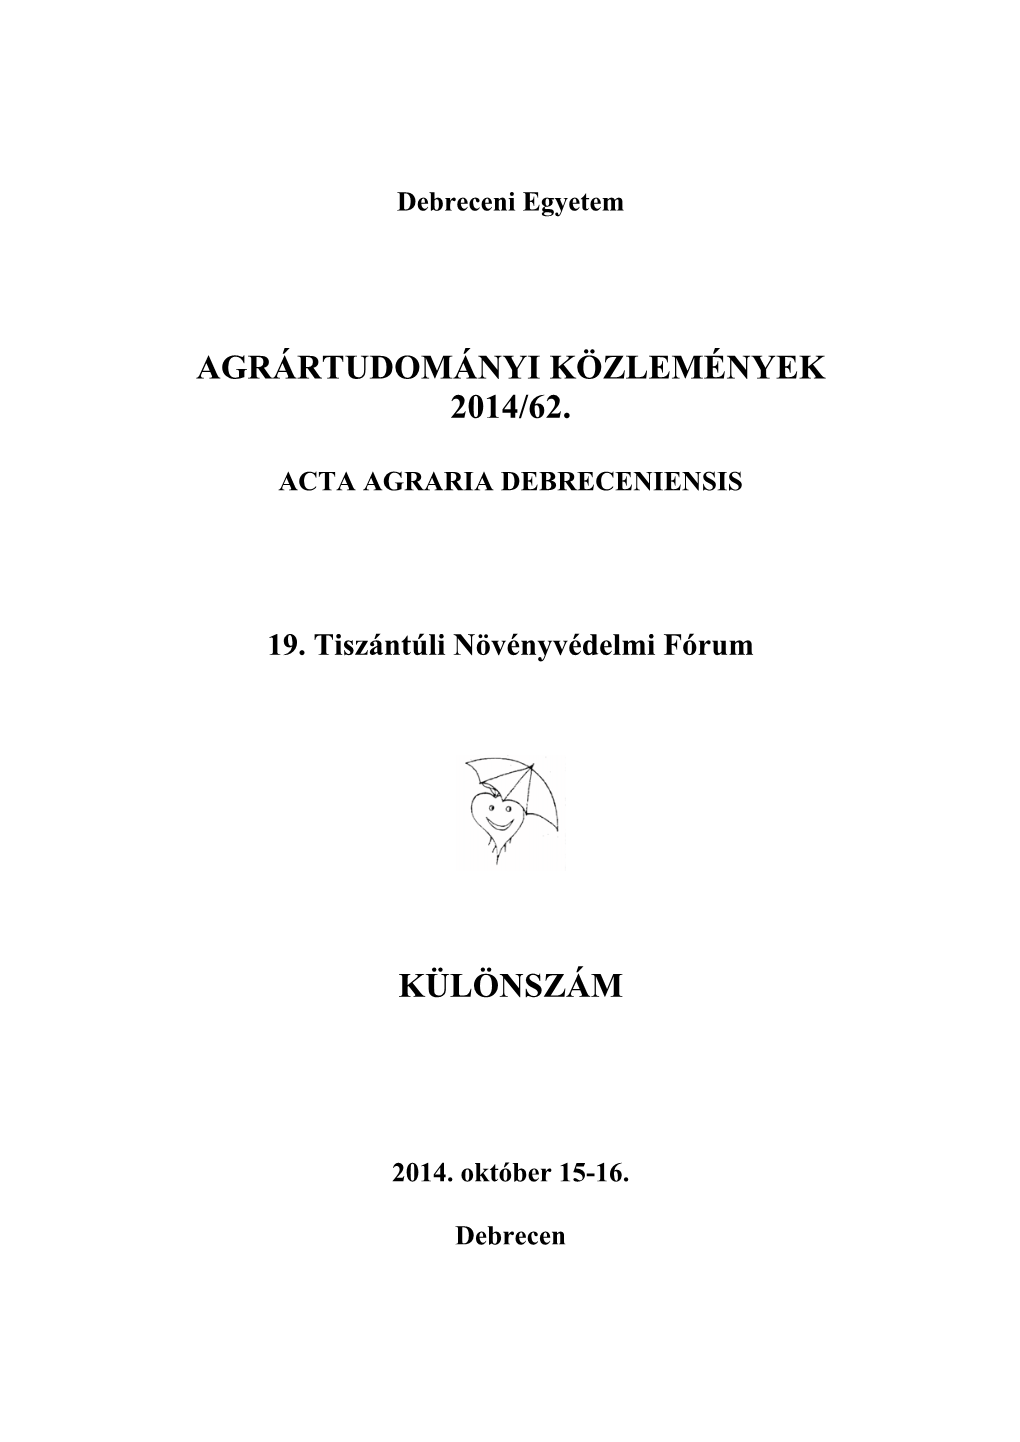 Agrártudományi Közlemények 2014/62. Különszám